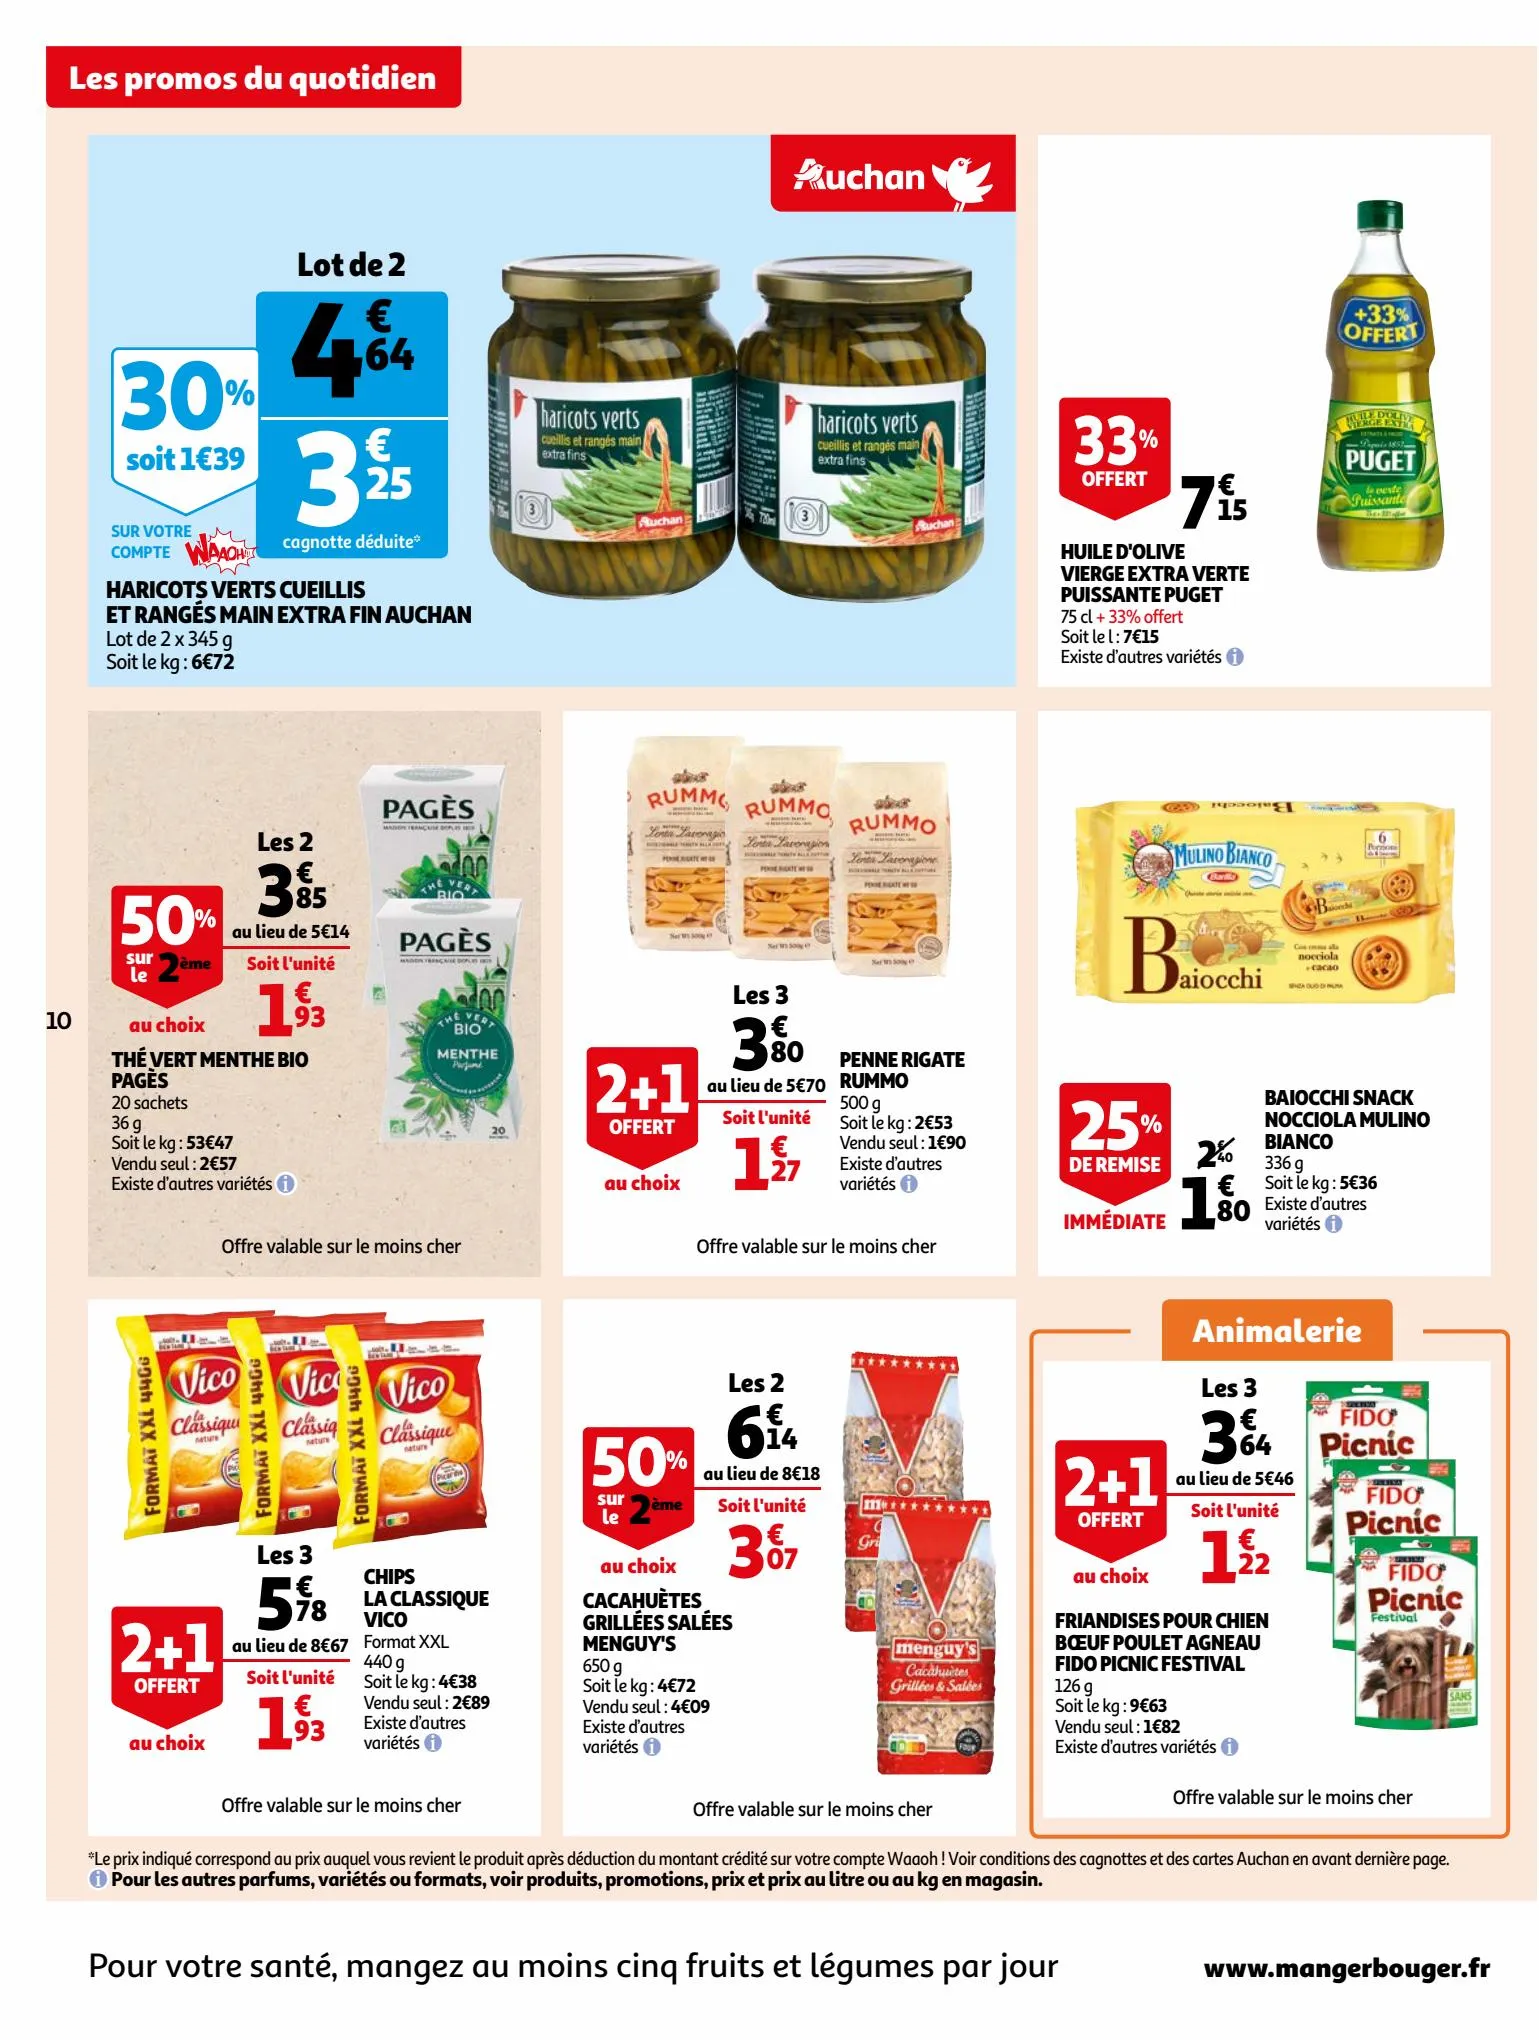 Catalogue Bio ou filière responsable, nos produits ont tout bon dans votre supermarché, page 00010